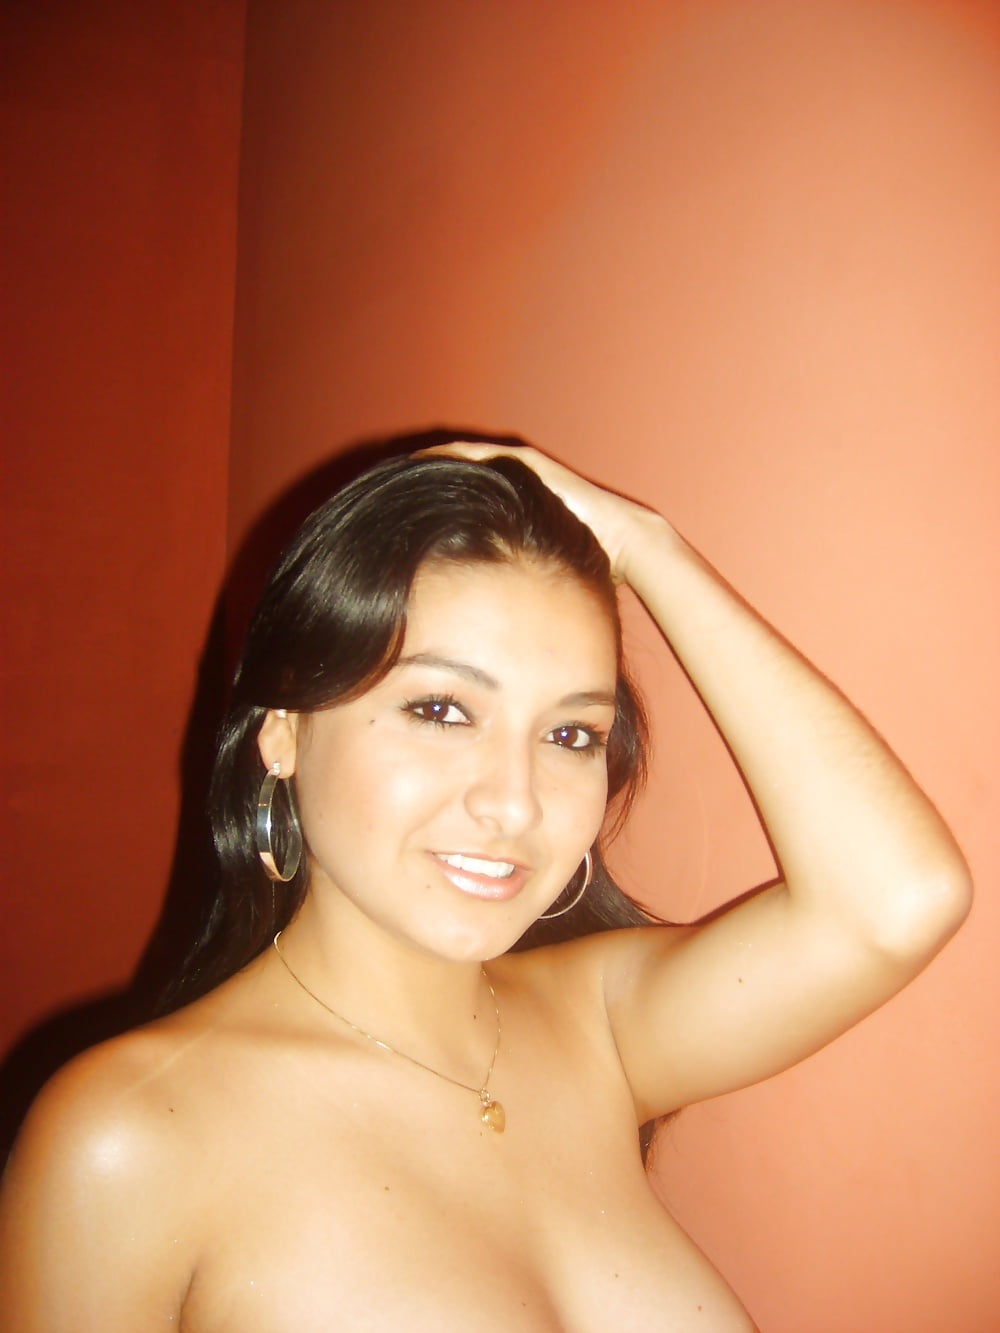 Amateur Latina Girl with Nice Big Ass Nude adult photos